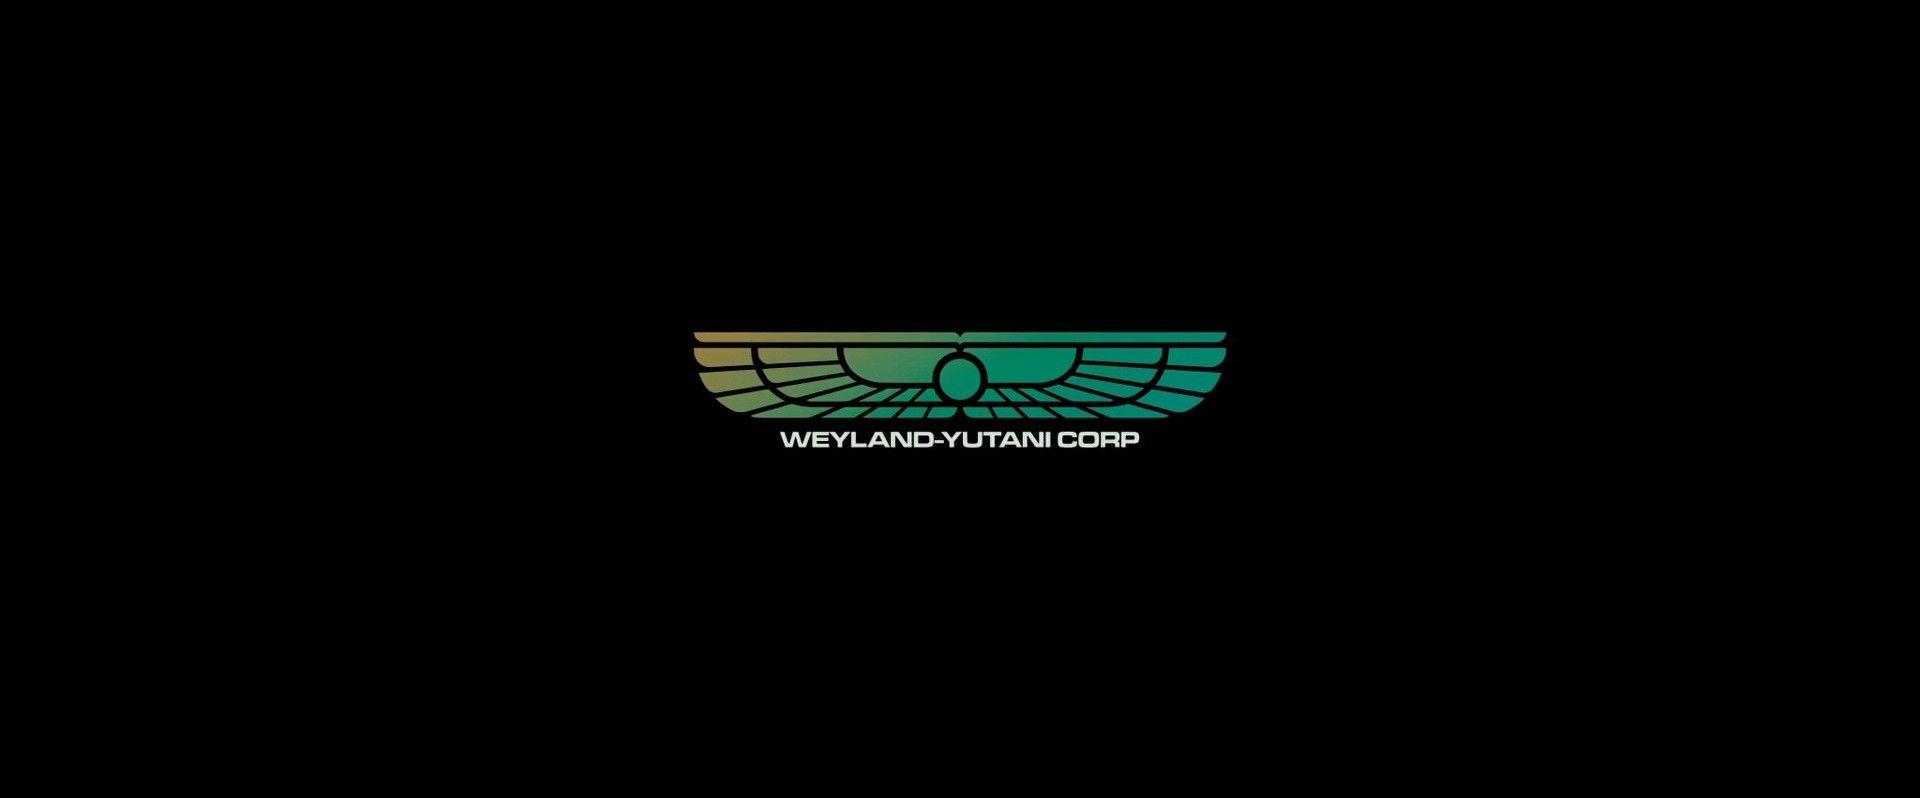 Alien 1979 Logo - Weyland-Yutani Corporation in “Alien” Franchise (1979–2017)